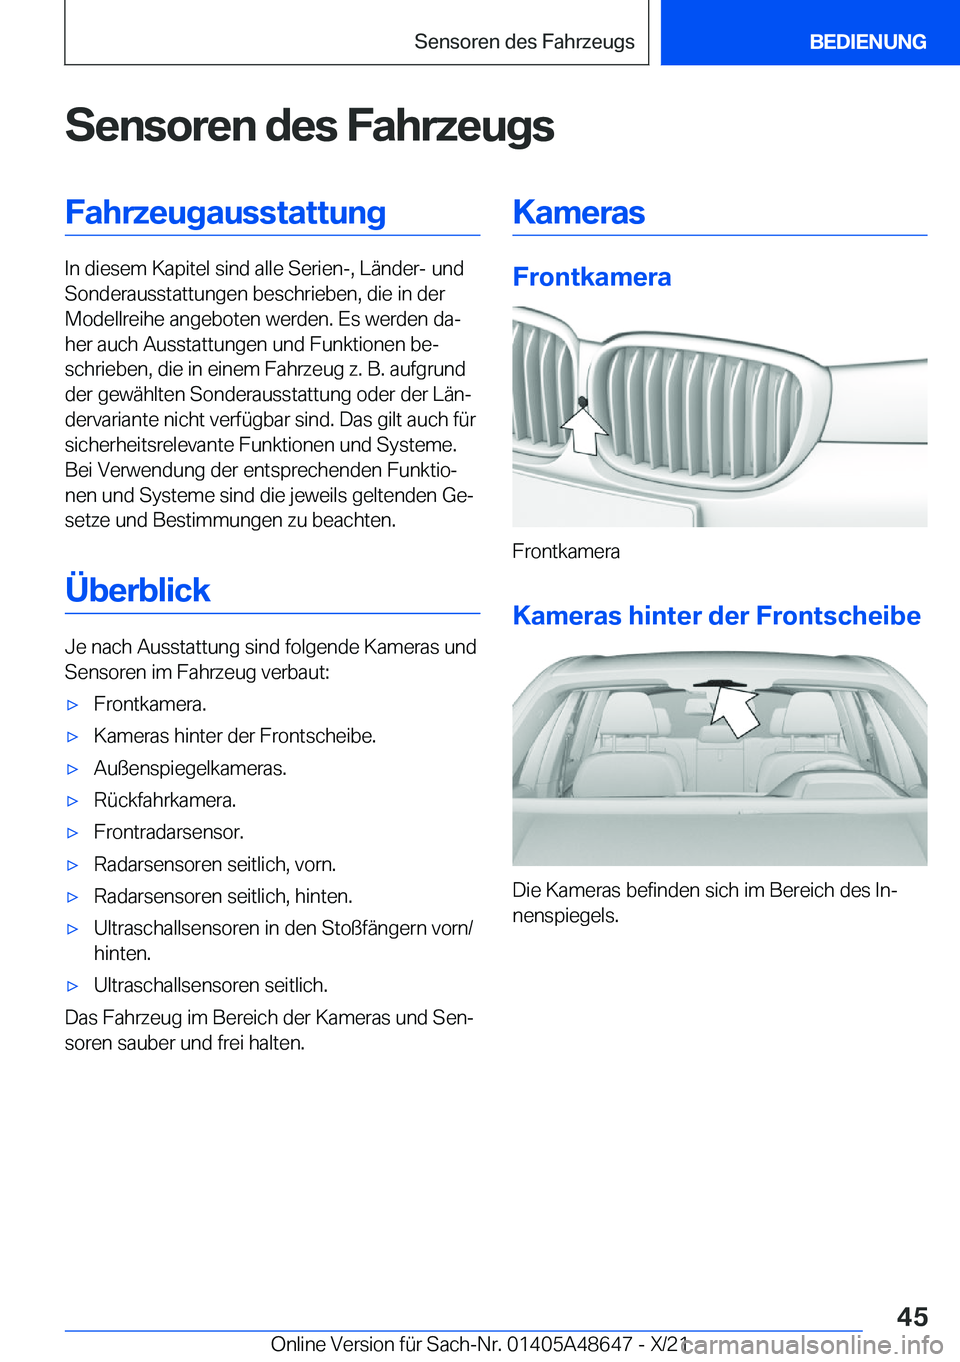 BMW 3 SERIES 2022  Betriebsanleitungen (in German) �S�e�n�s�o�r�e�n��d�e�s��F�a�h�r�z�e�u�g�s�F�a�h�r�z�e�u�g�a�u�s�s�t�a�t�t�u�n�g
�I�n��d�i�e�s�e�m��K�a�p�i�t�e�l��s�i�n�d��a�l�l�e��S�e�r�i�e�n�-�,��L�